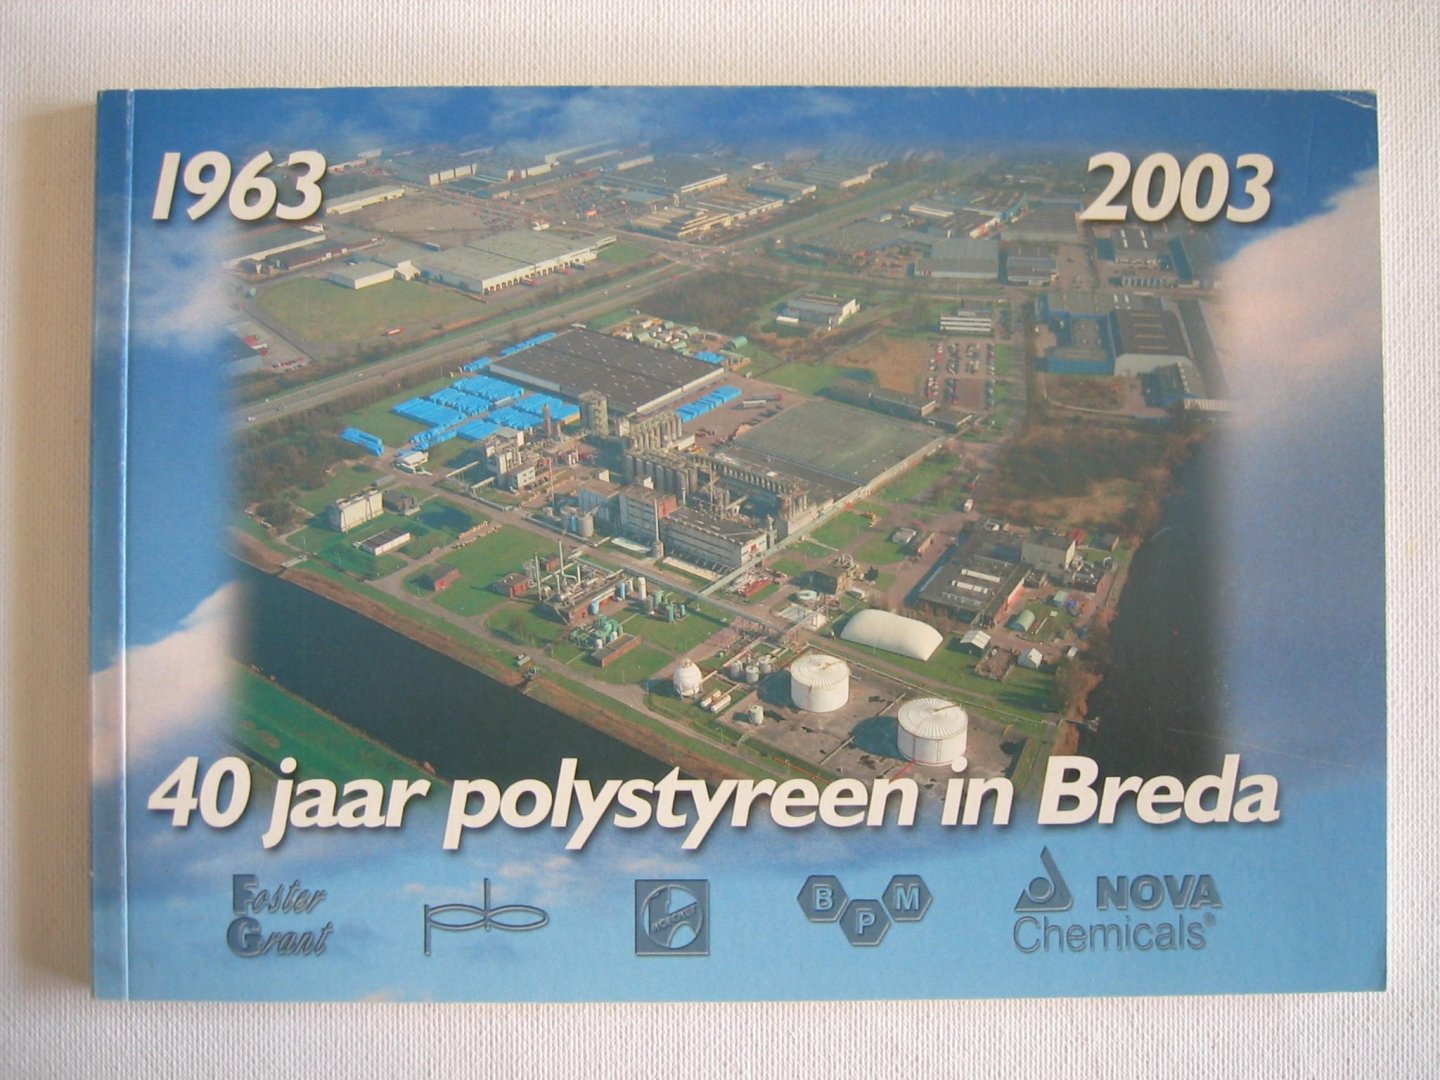 Leo Bartels e.a. - 40 jaar polystyreen in Breda 1963 - 2003